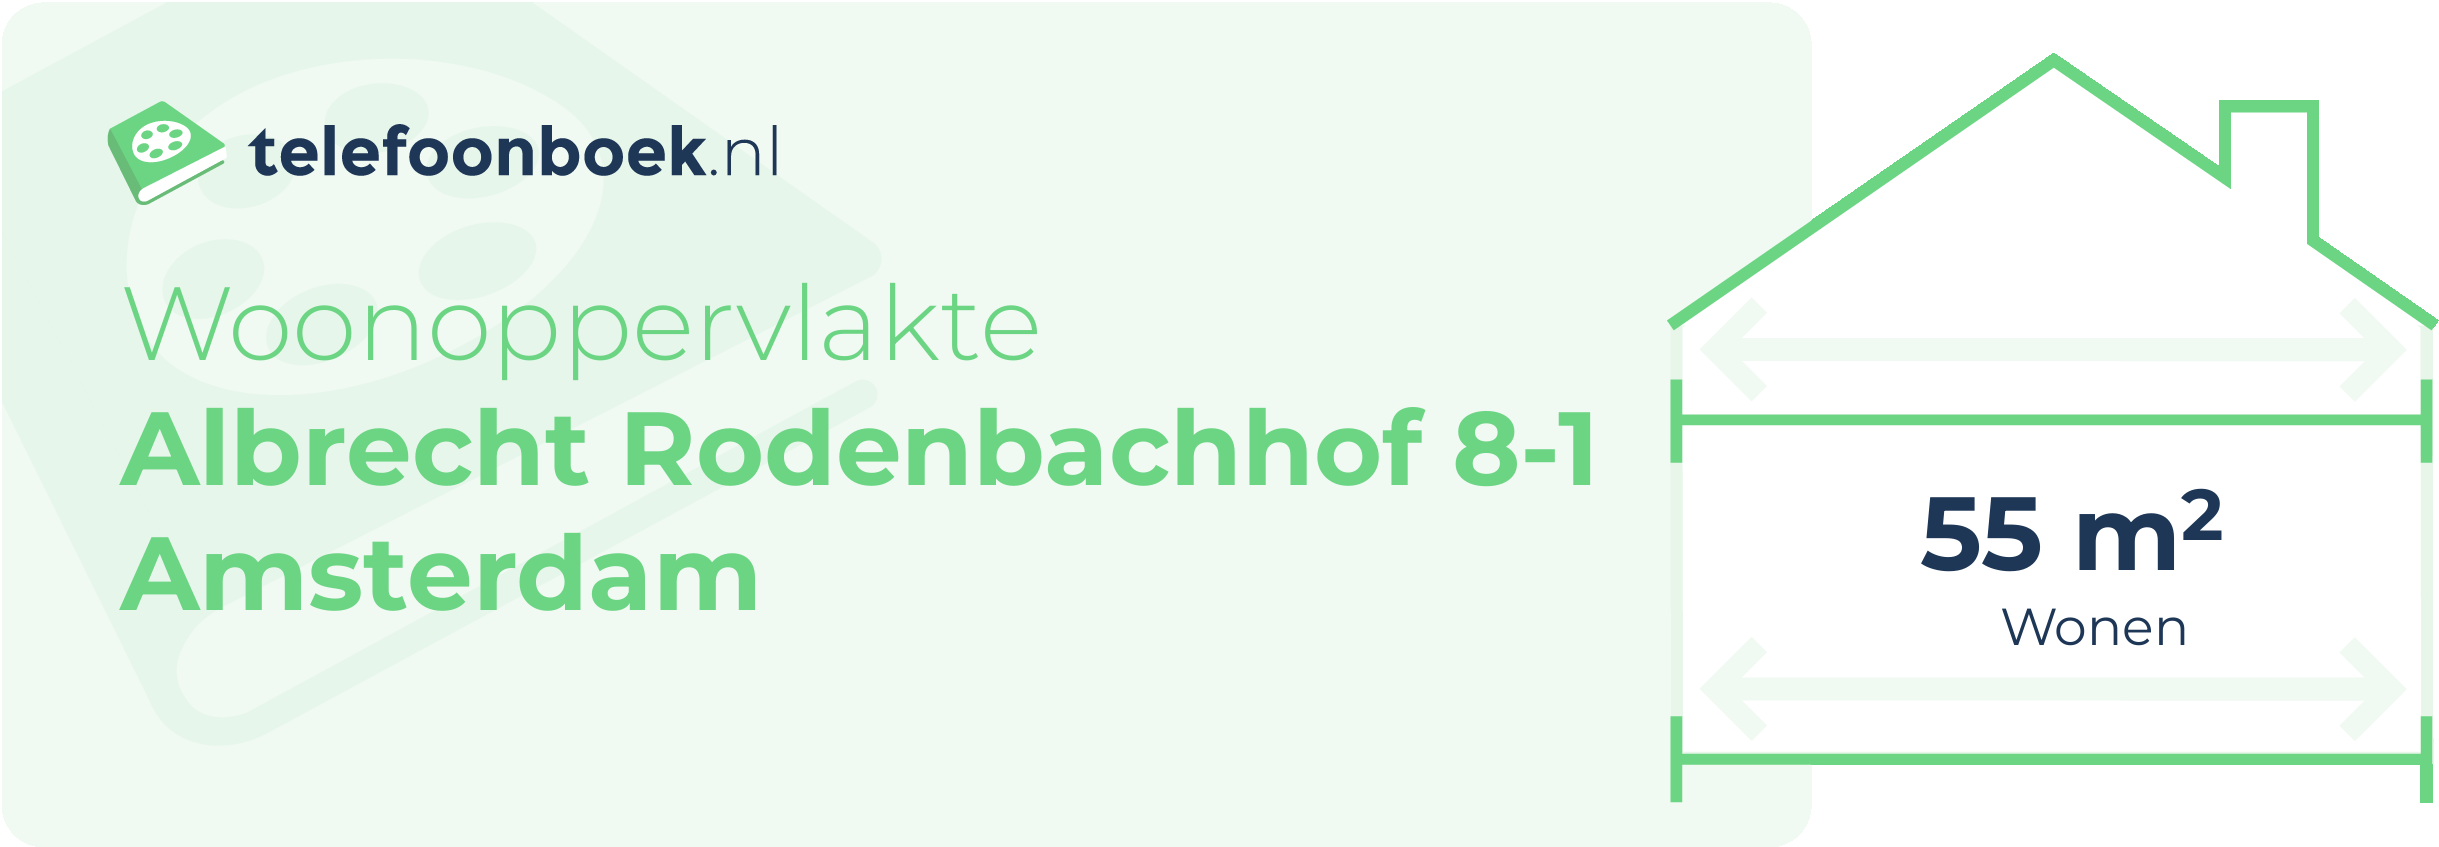 Woonoppervlakte Albrecht Rodenbachhof 8-1 Amsterdam